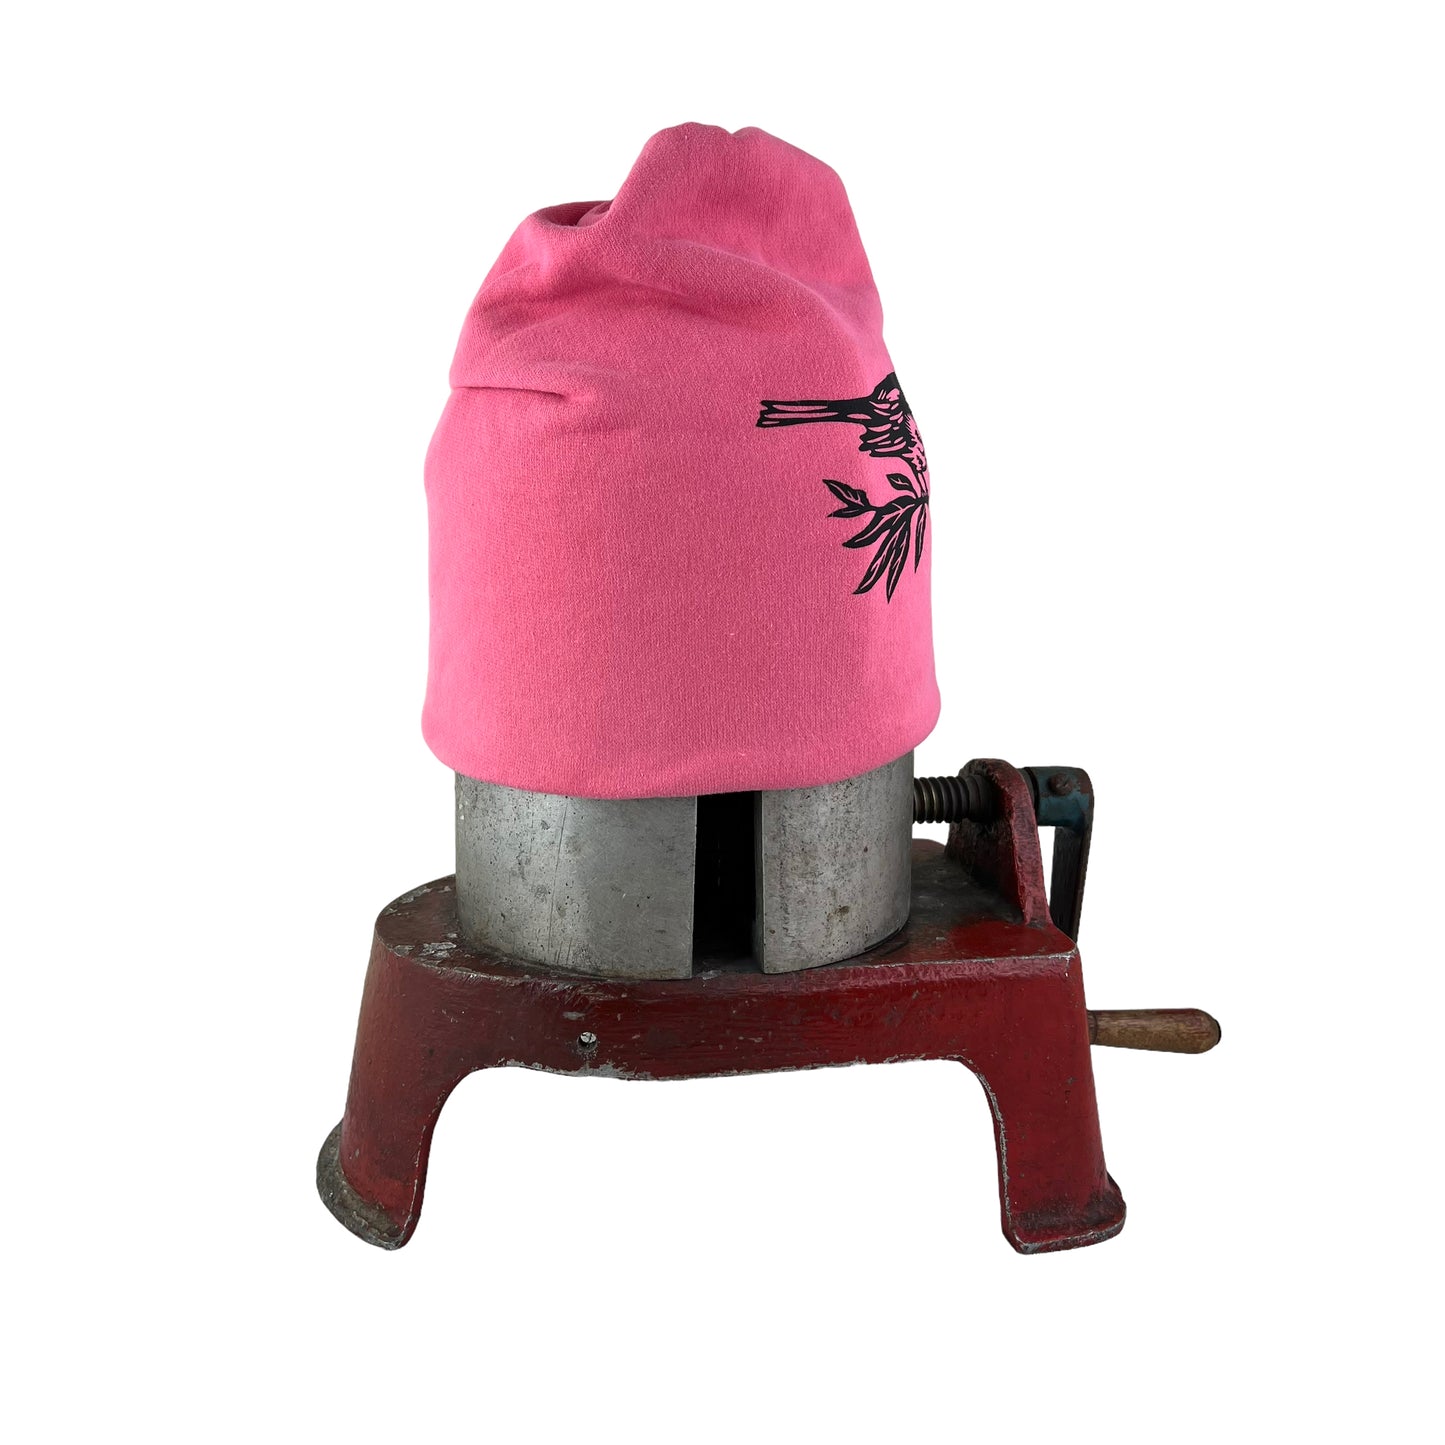 Warbler Slouchy Bird Toque Hat Pink